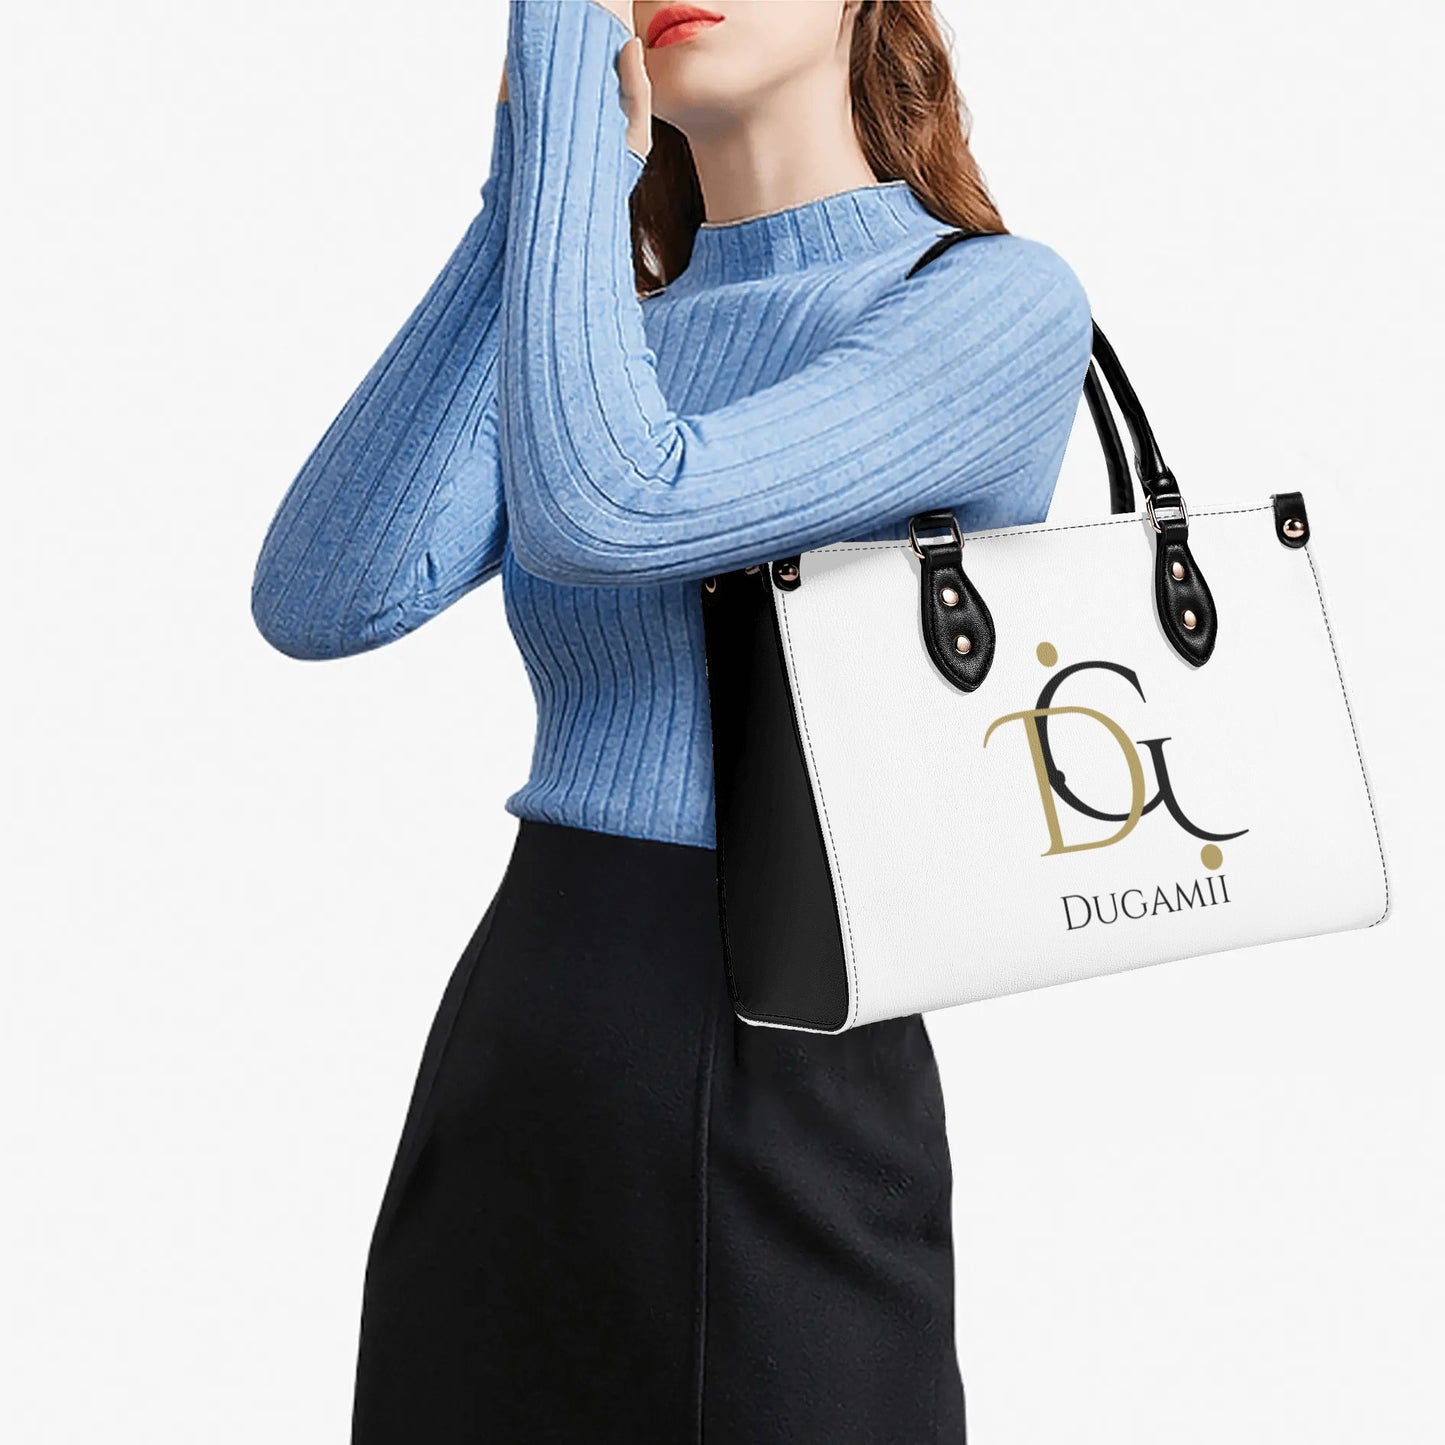 DuGamii Luxury Women PU Leather Handbag